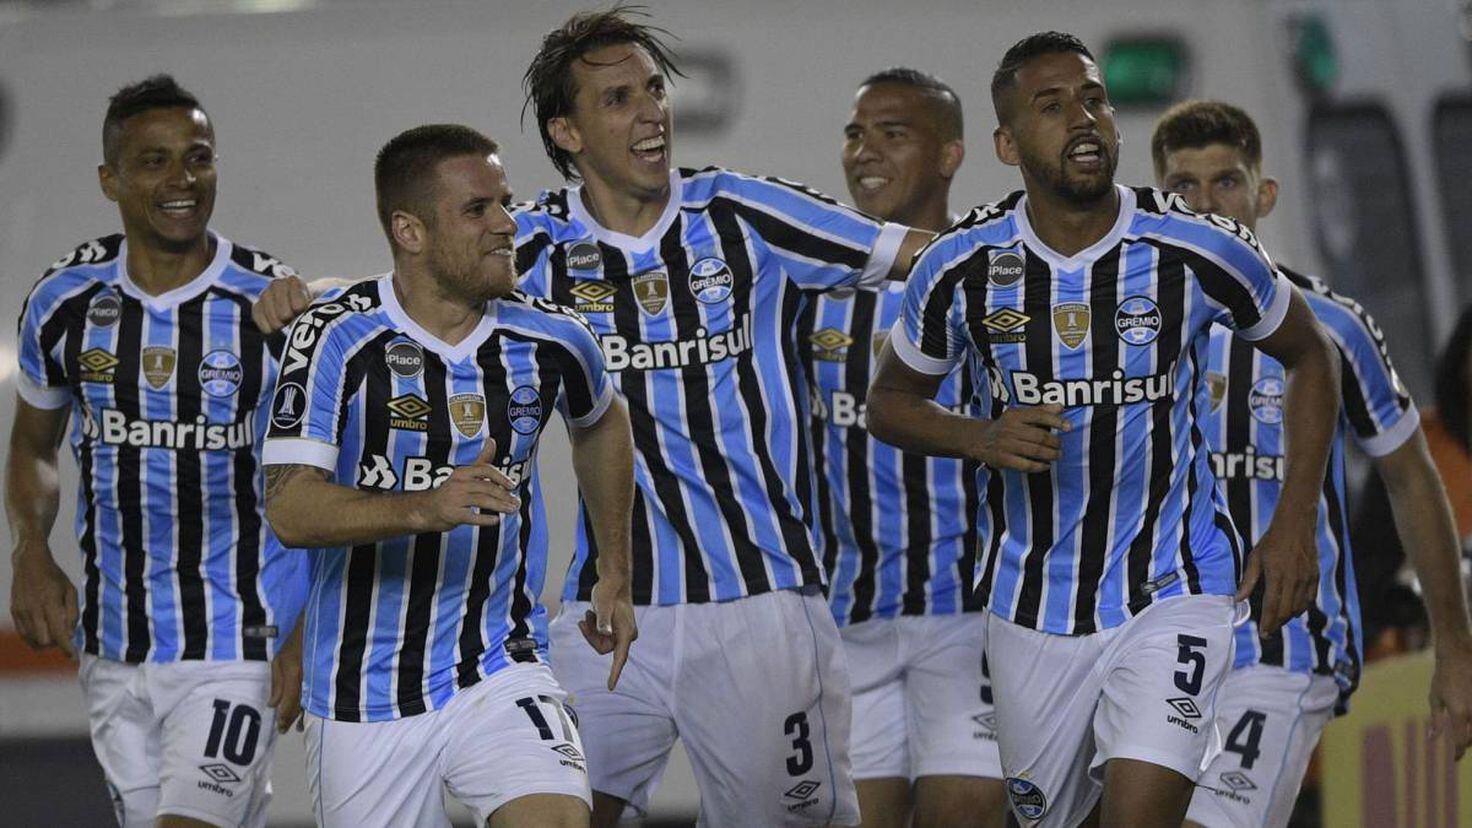 Libertadores] The 2023 Copa Libertadores quarterfinals. : r/soccer